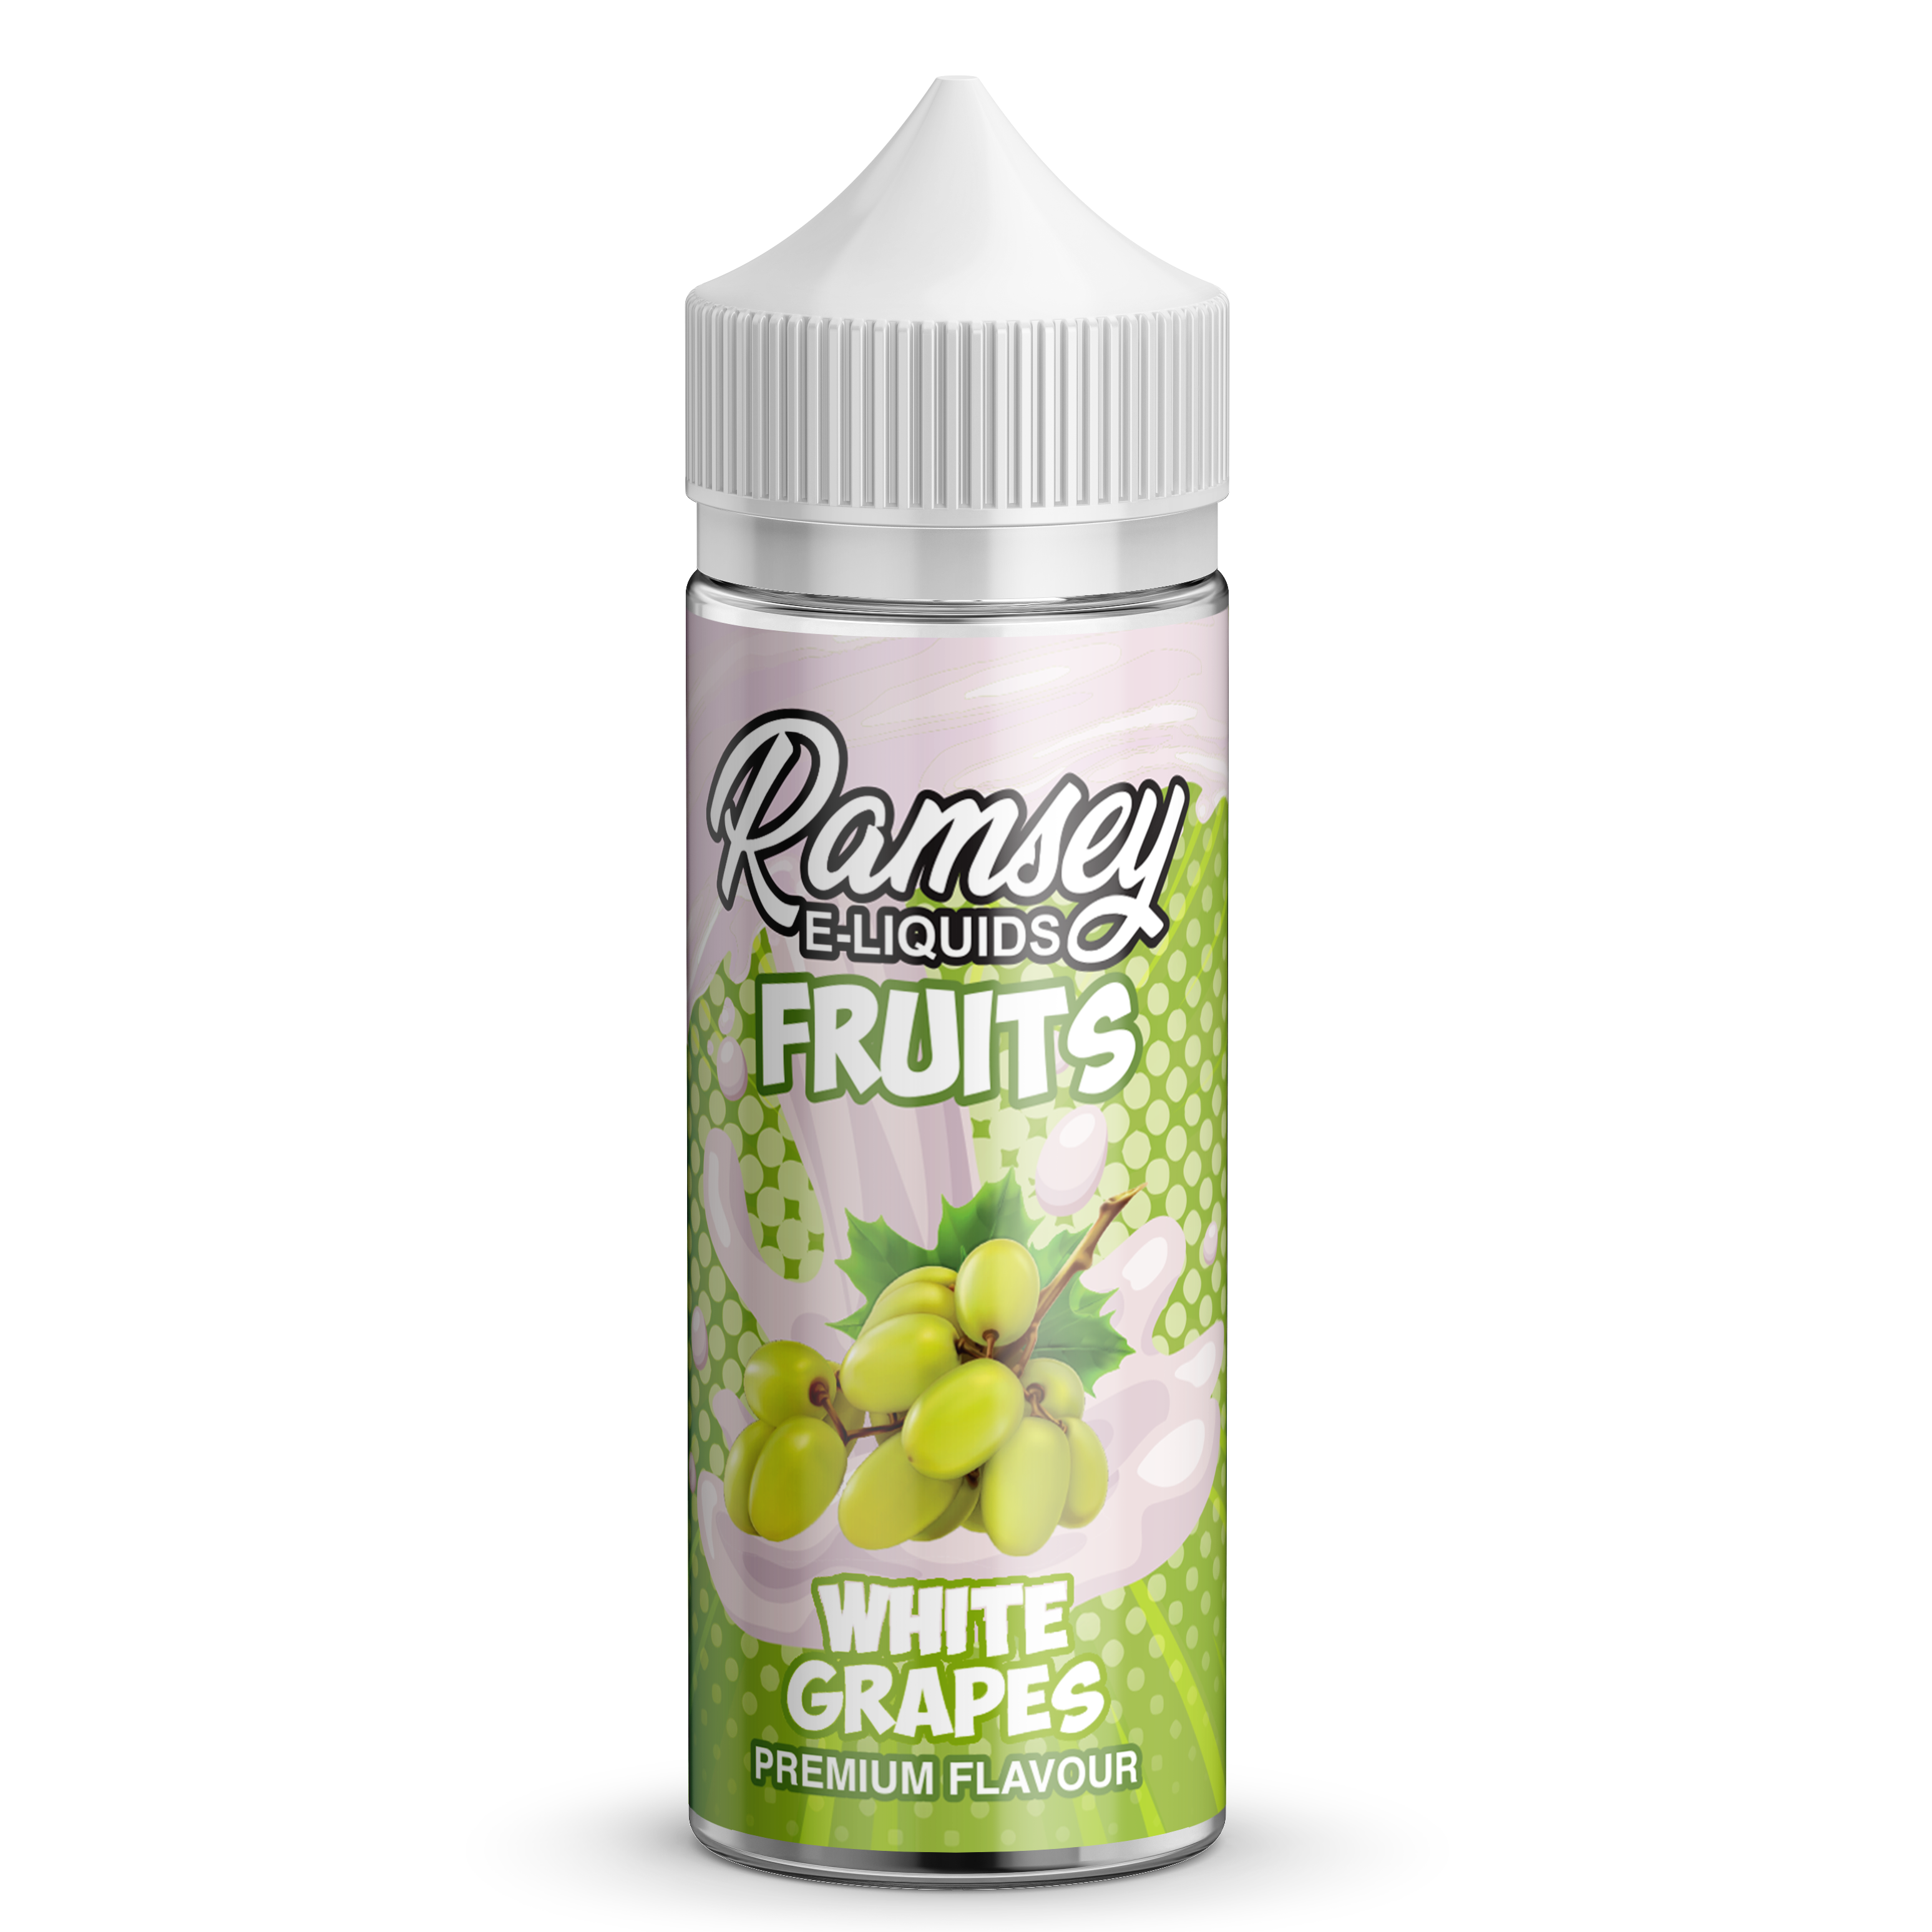 Ramsey E-Liquids Fruits White Grapes 0mg 100ml Shortfill E-Liquid